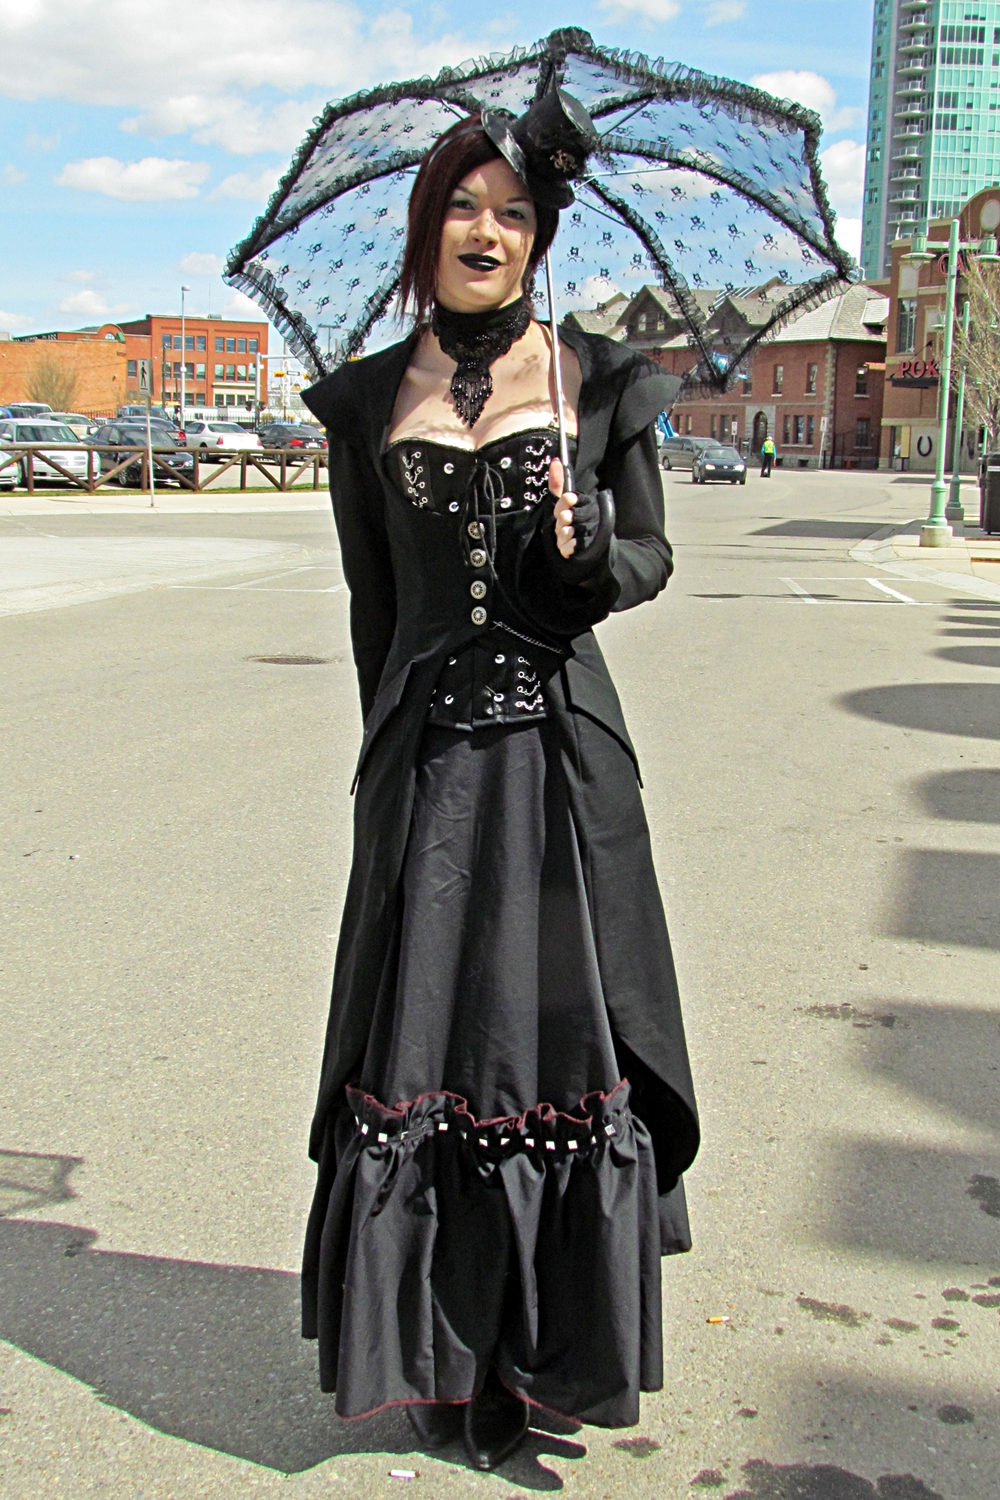 File:Steampunk - woman in black dress.jpg - Wikimedia Commons